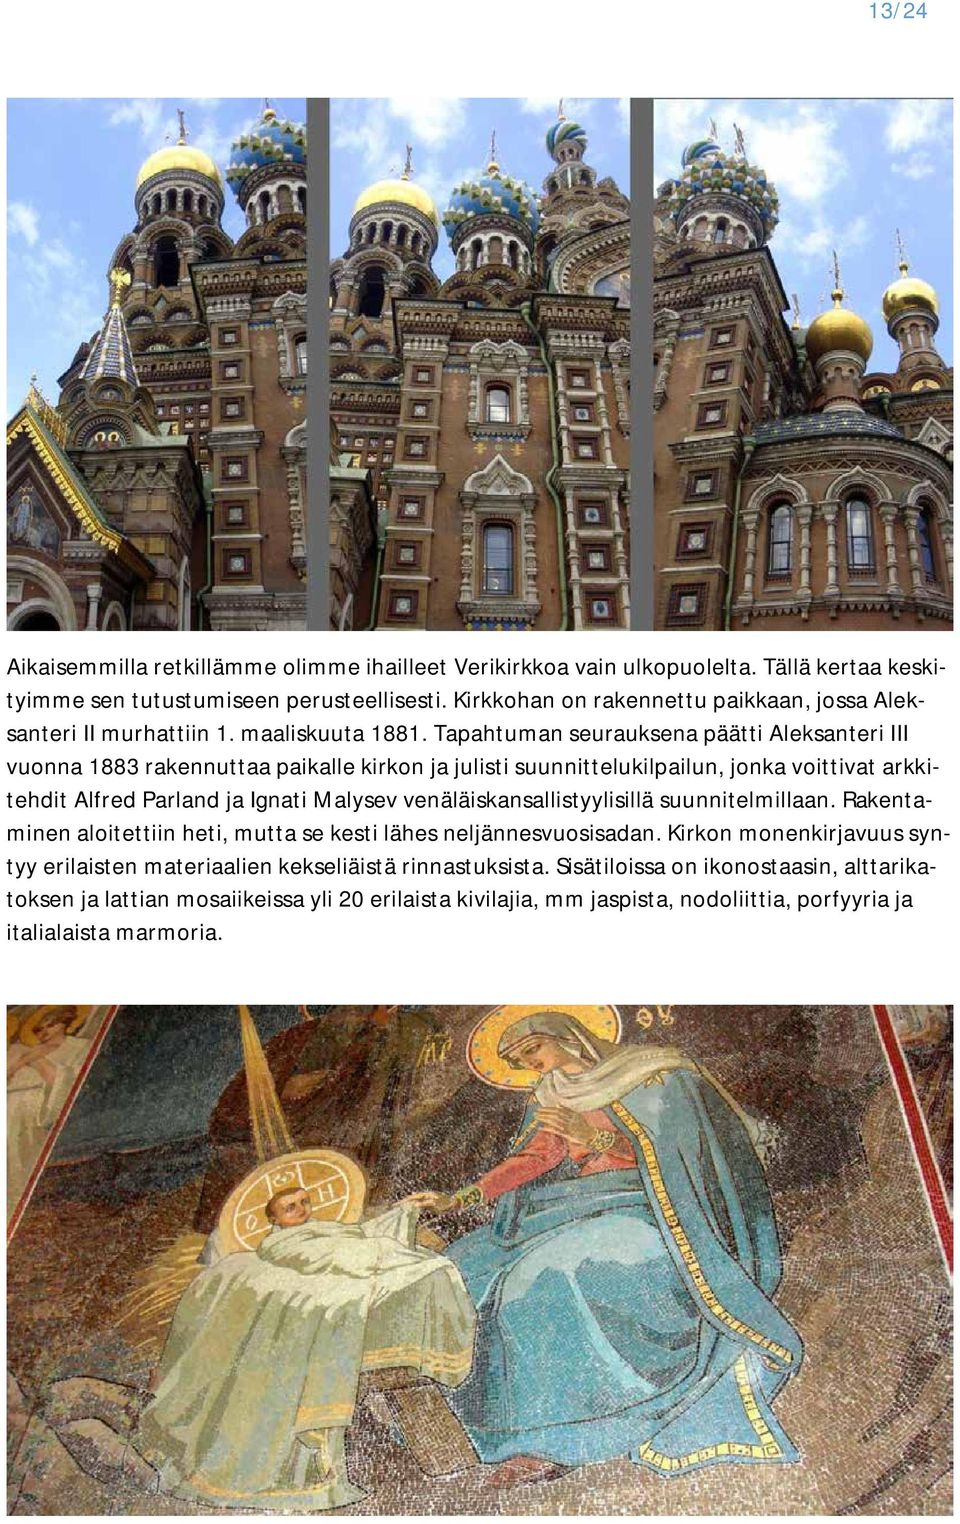 Tapahtuman seurauksena päätti Aleksanteri III vuonna 1883 rakennuttaa paikalle kirkon ja julisti suunnittelukilpailun, jonka voittivat arkkitehdit Alfred Parland ja Ignati Malysev